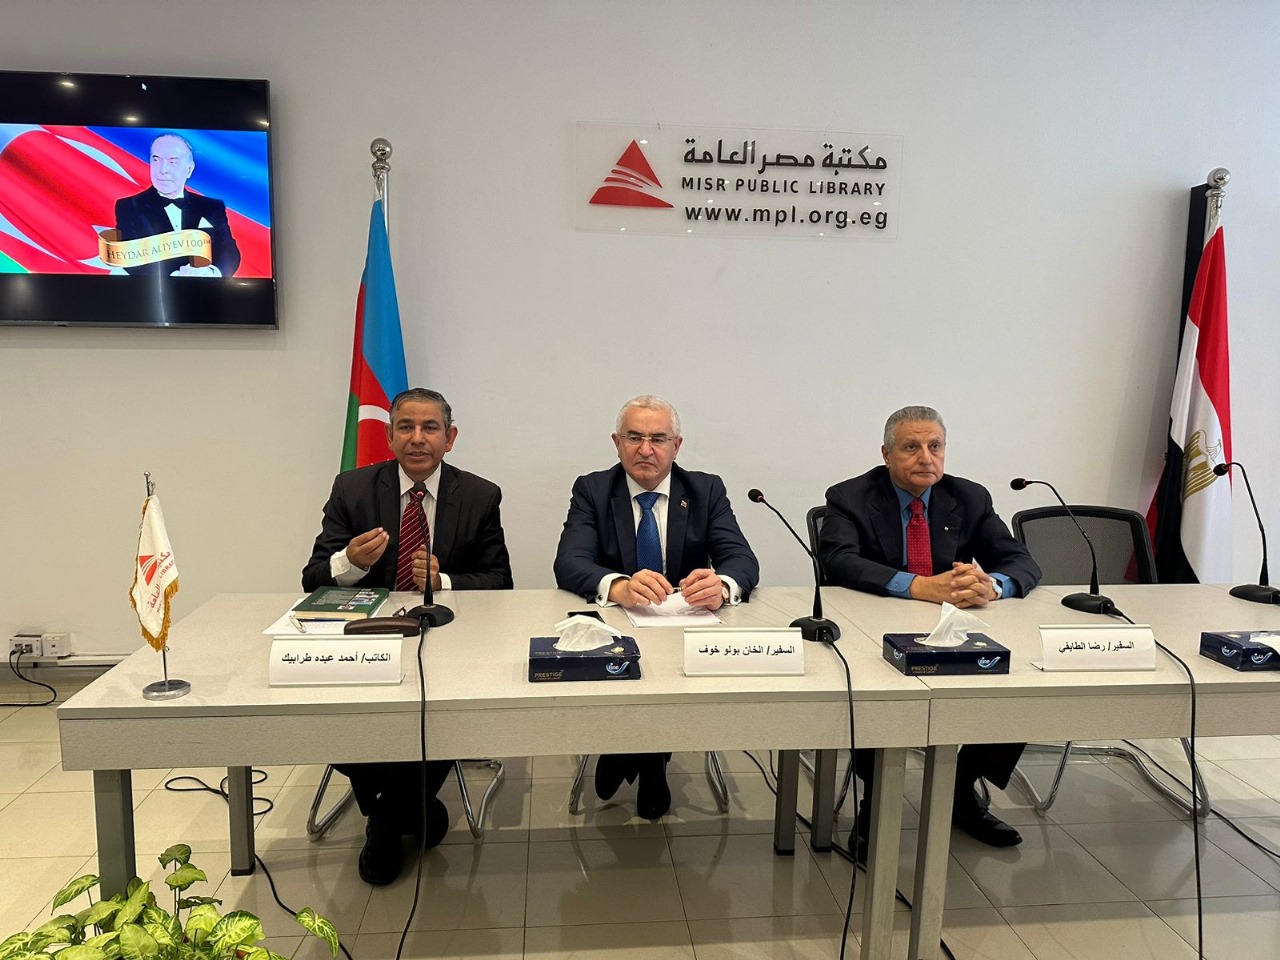 سفارة أذربيجان في مصر تحتفل بصدور كتاب جديد عن الزعيم حيدر علييف